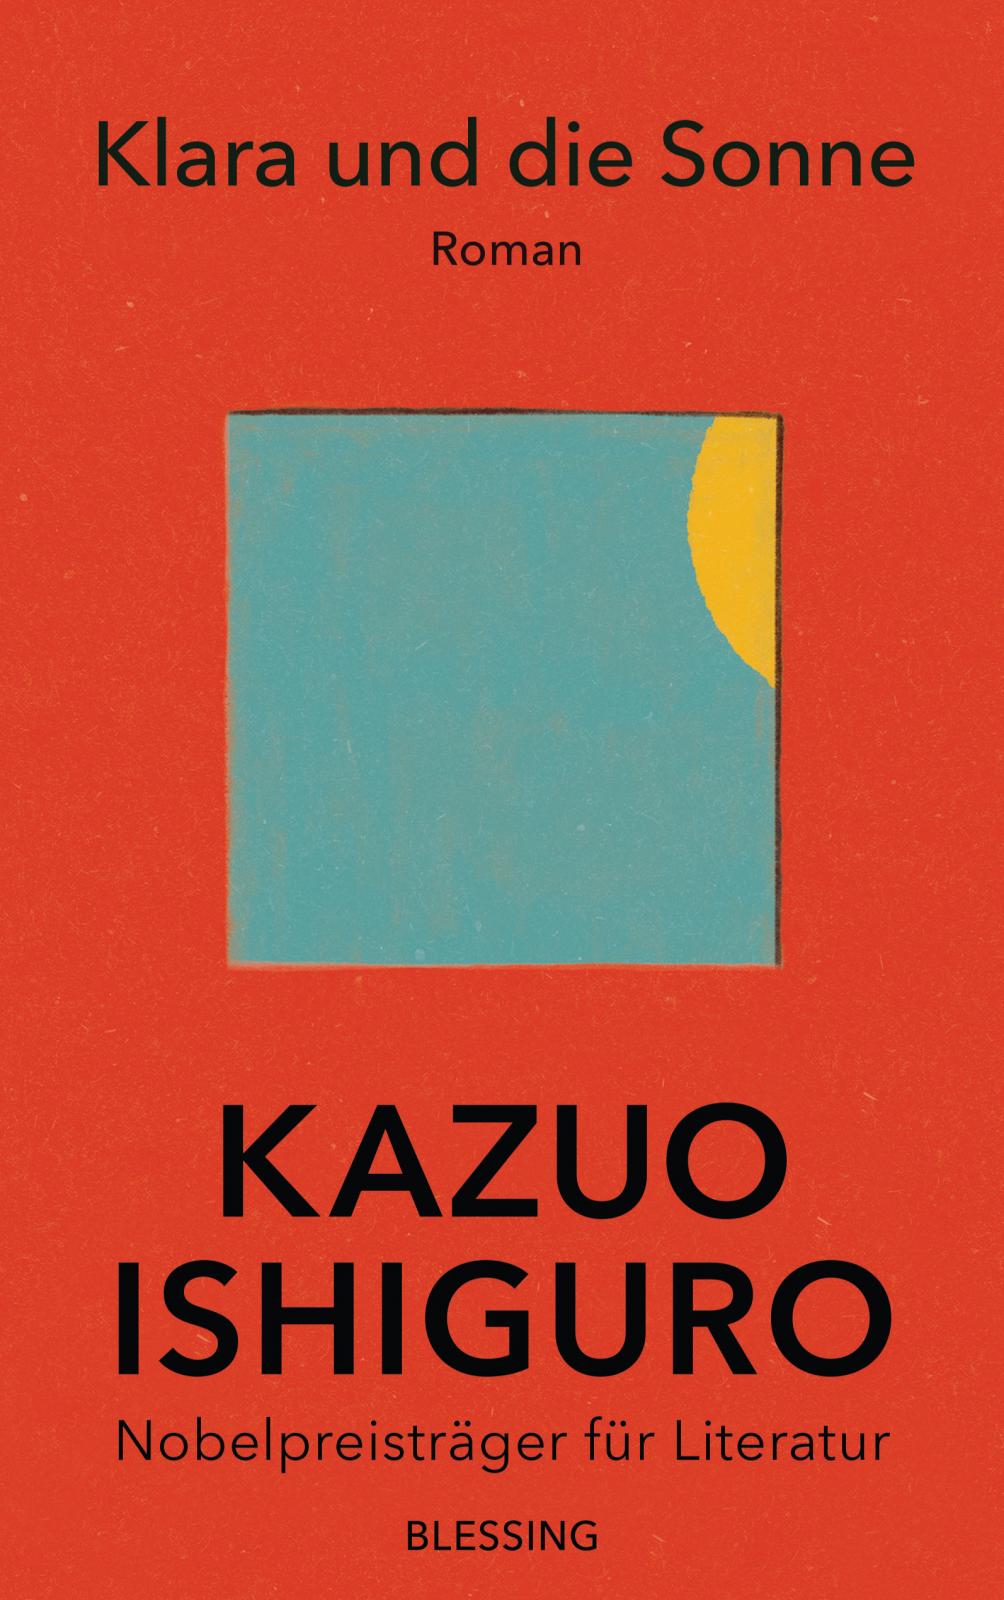 Kazuo Ishiguro: Klara und die Sonne